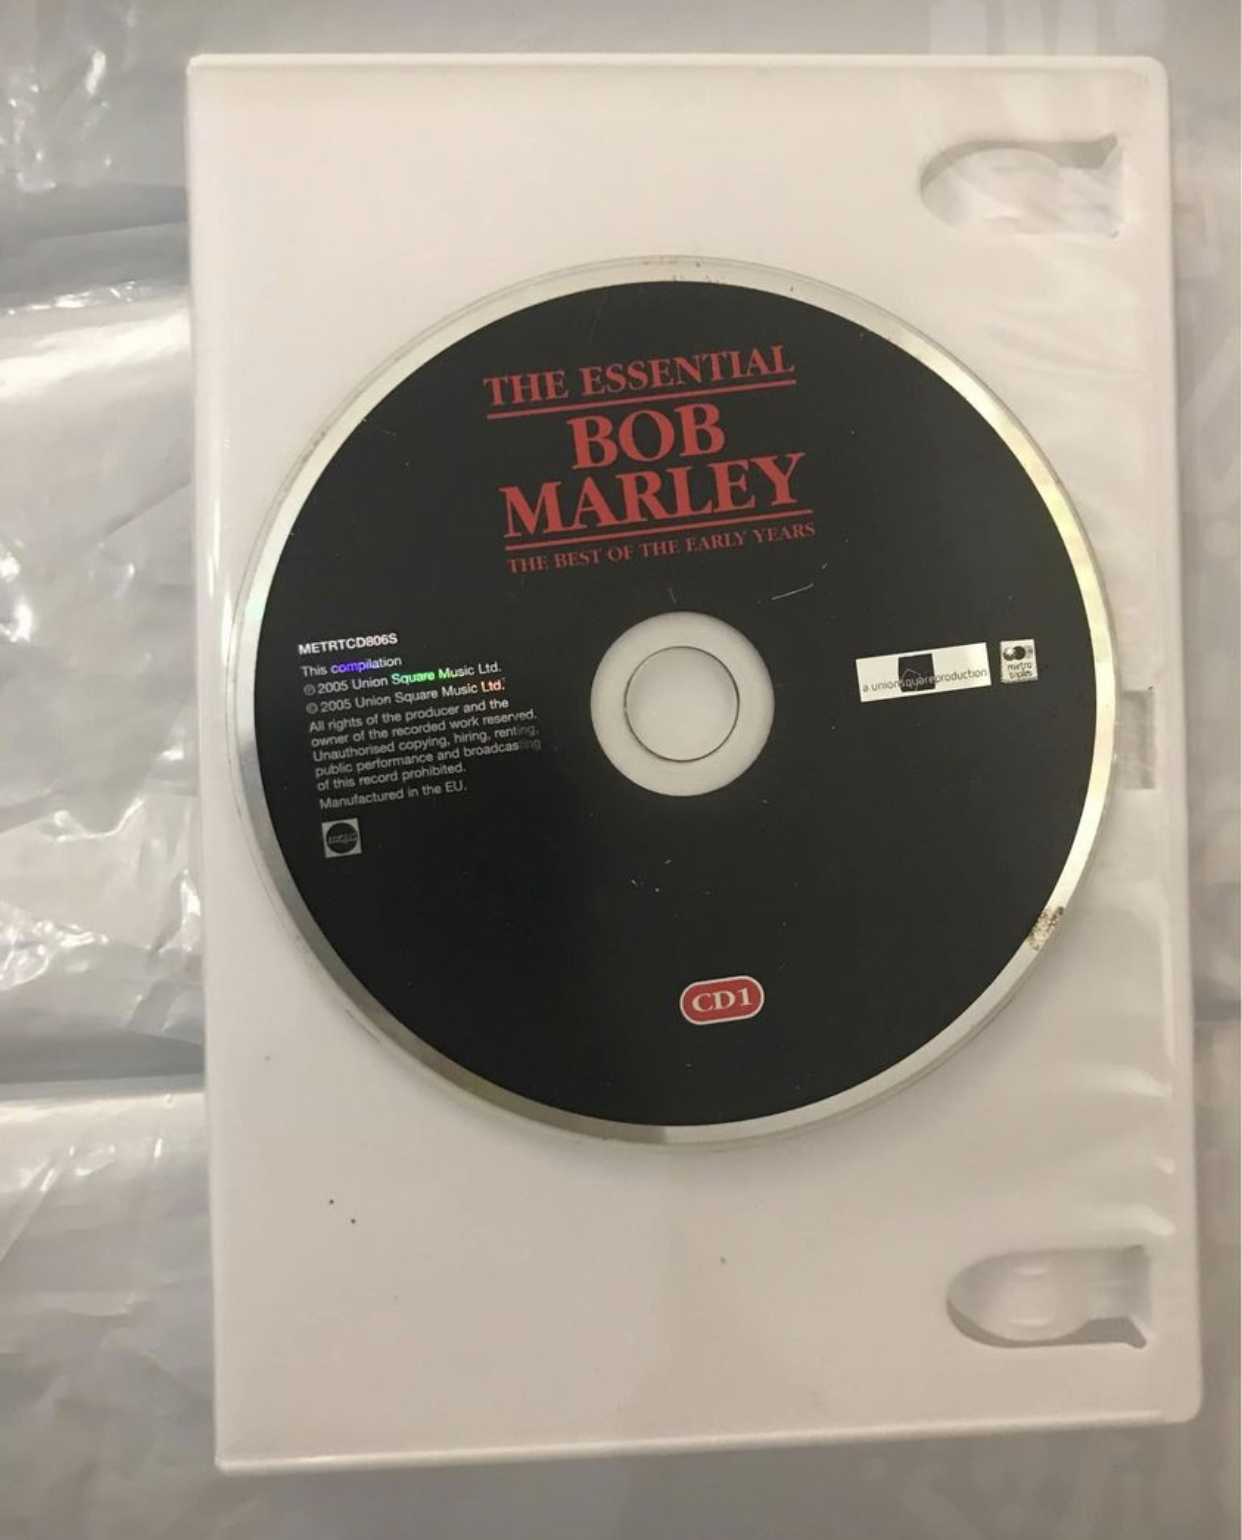 The essential Bob Marley CD